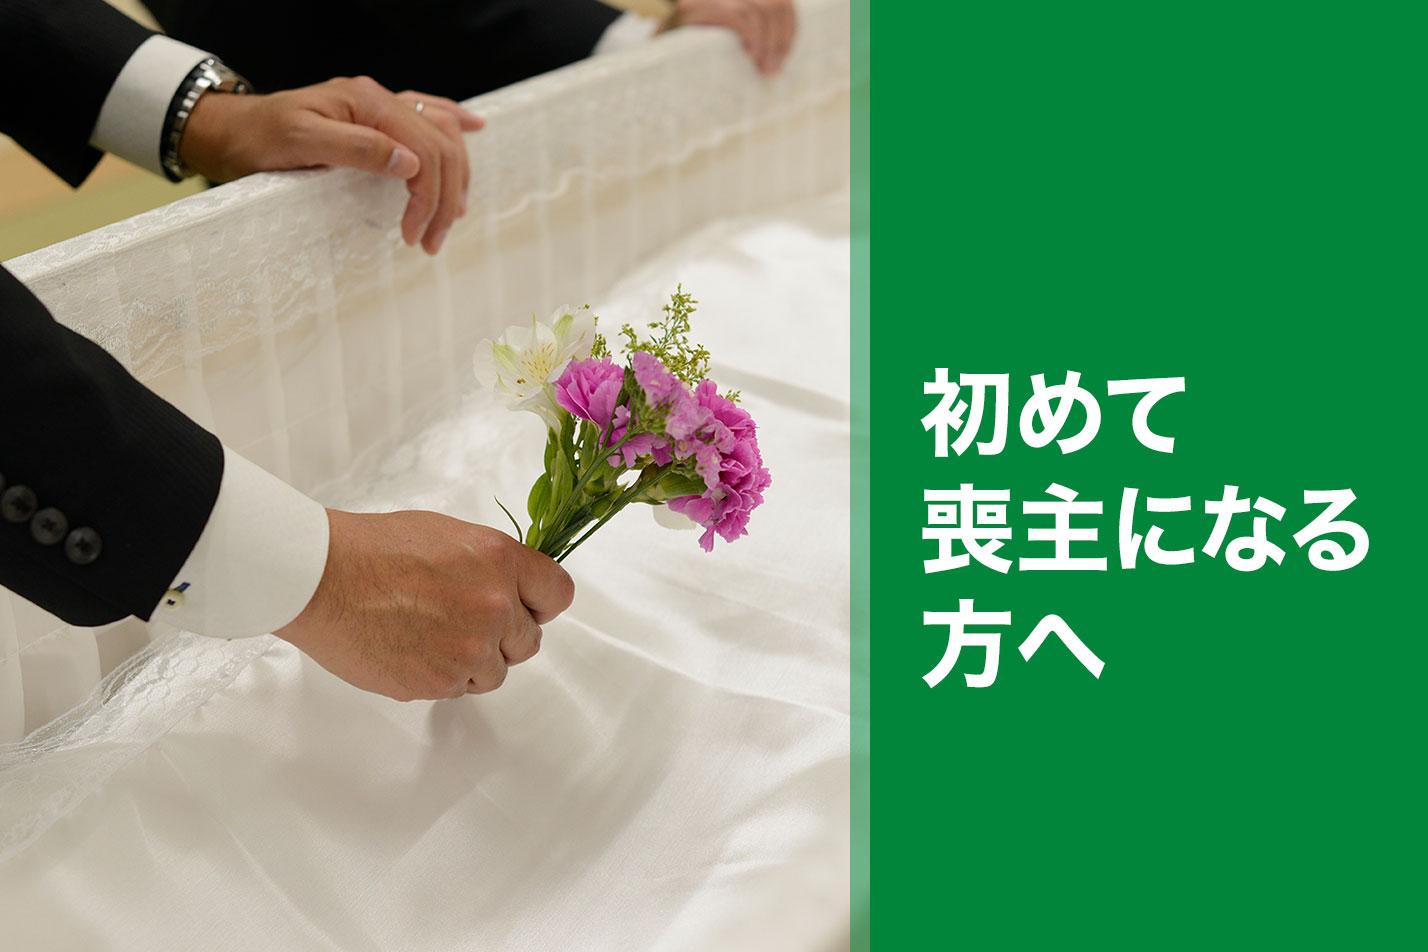  所沢市ではじめての葬儀を行う喪主様へのイメージ画像